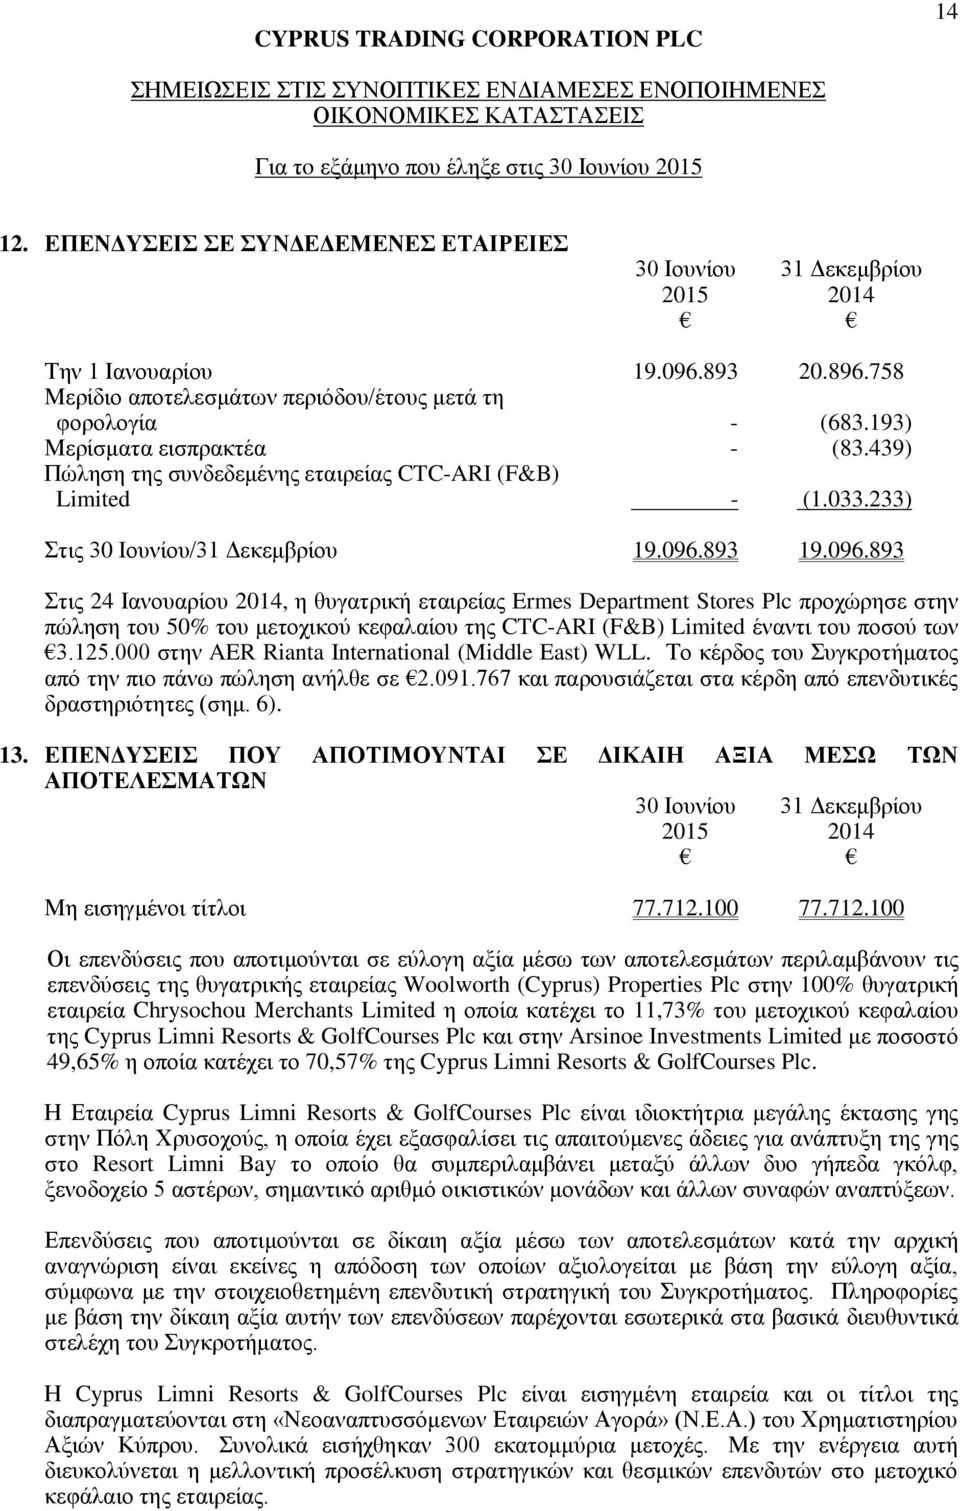 893 19.096.893 Στις 24 Ιανουαρίου 2014, η θυγατρική εταιρείας Ermes Department Stores Plc προχώρησε στην πώληση του 50% του μετοχικού κεφαλαίου της CTC-ARI (F&B) Limited έναντι του ποσού των 3.125.